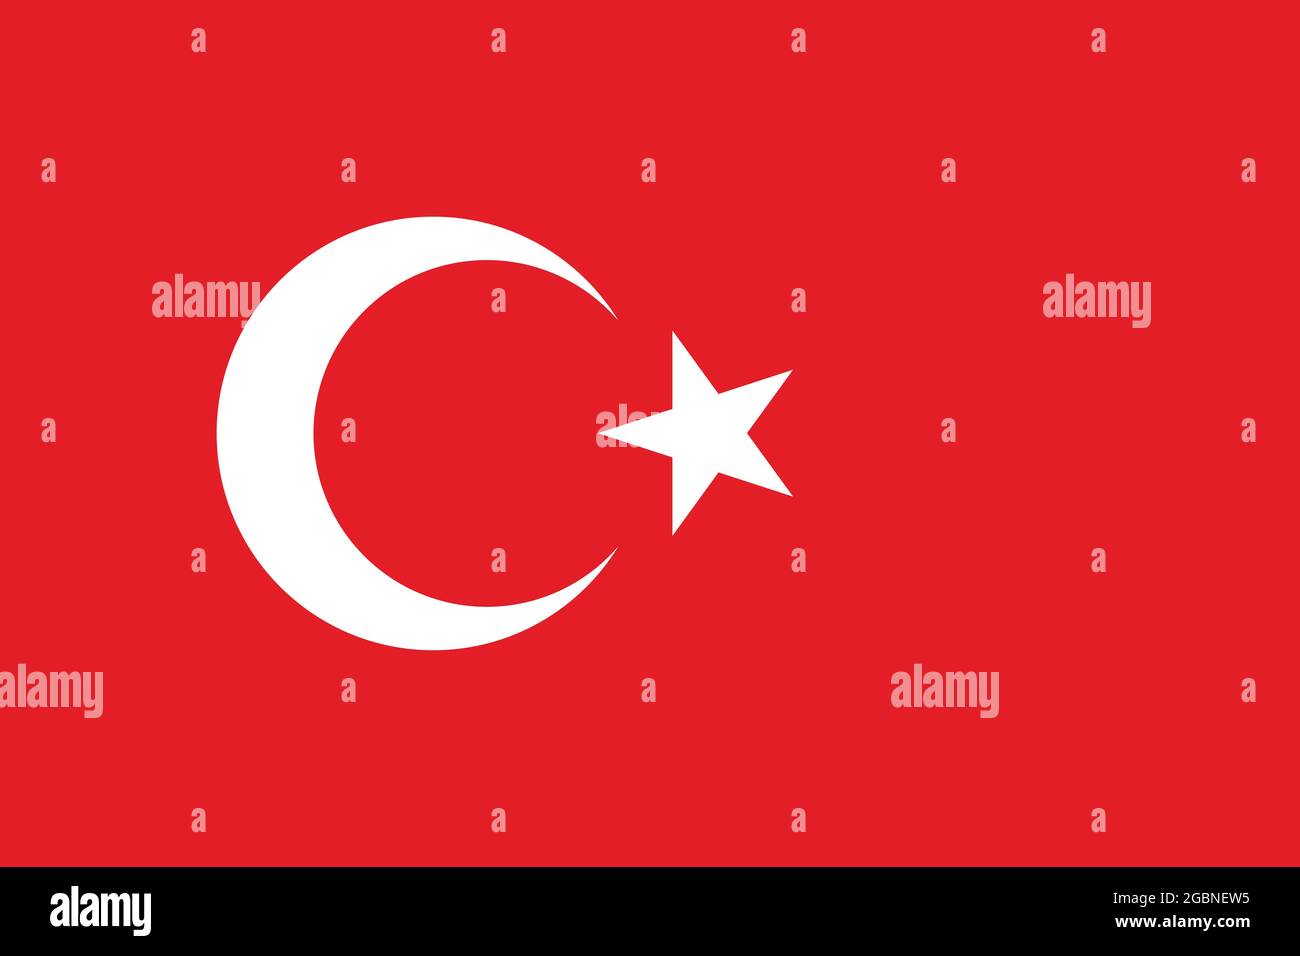 Nationalflagge der Türkei in Originalgröße und Farben Vektordarstellung, türkische Flaggen mit Stern und Halbmond, al bayrak oder als al Sancak auf Türkisch Stock Vektor